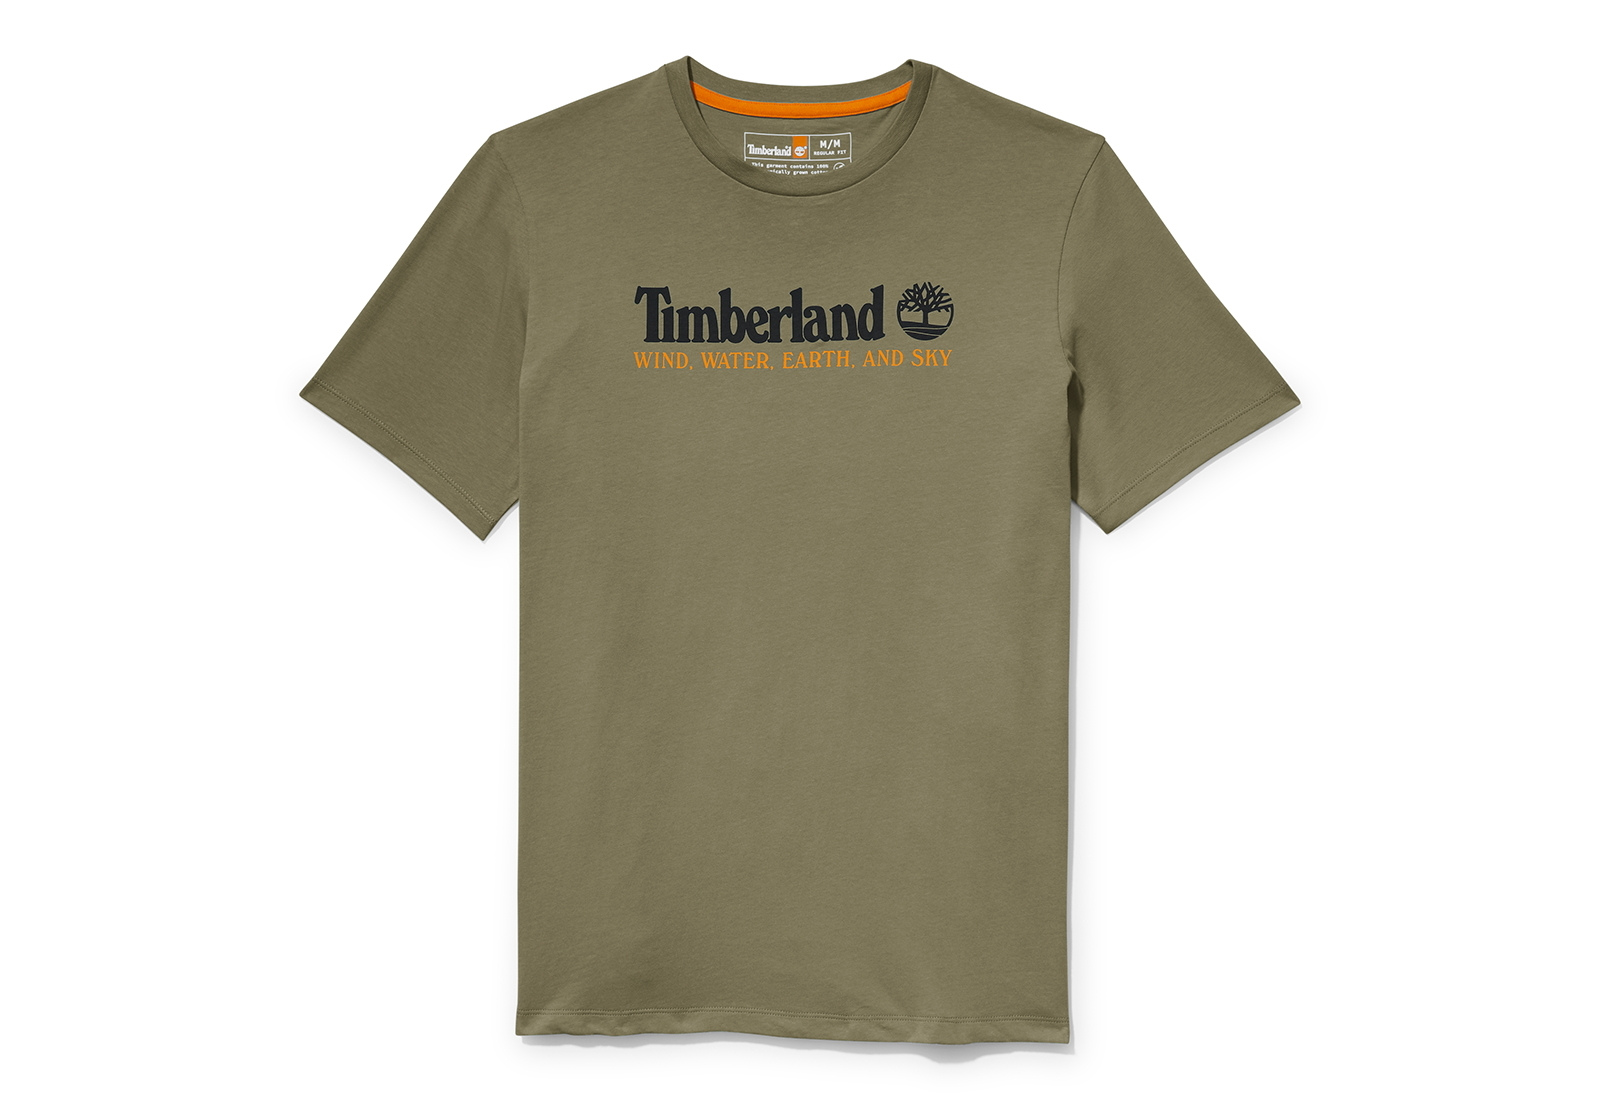 Timberland Oblečení Wwes Front Tee